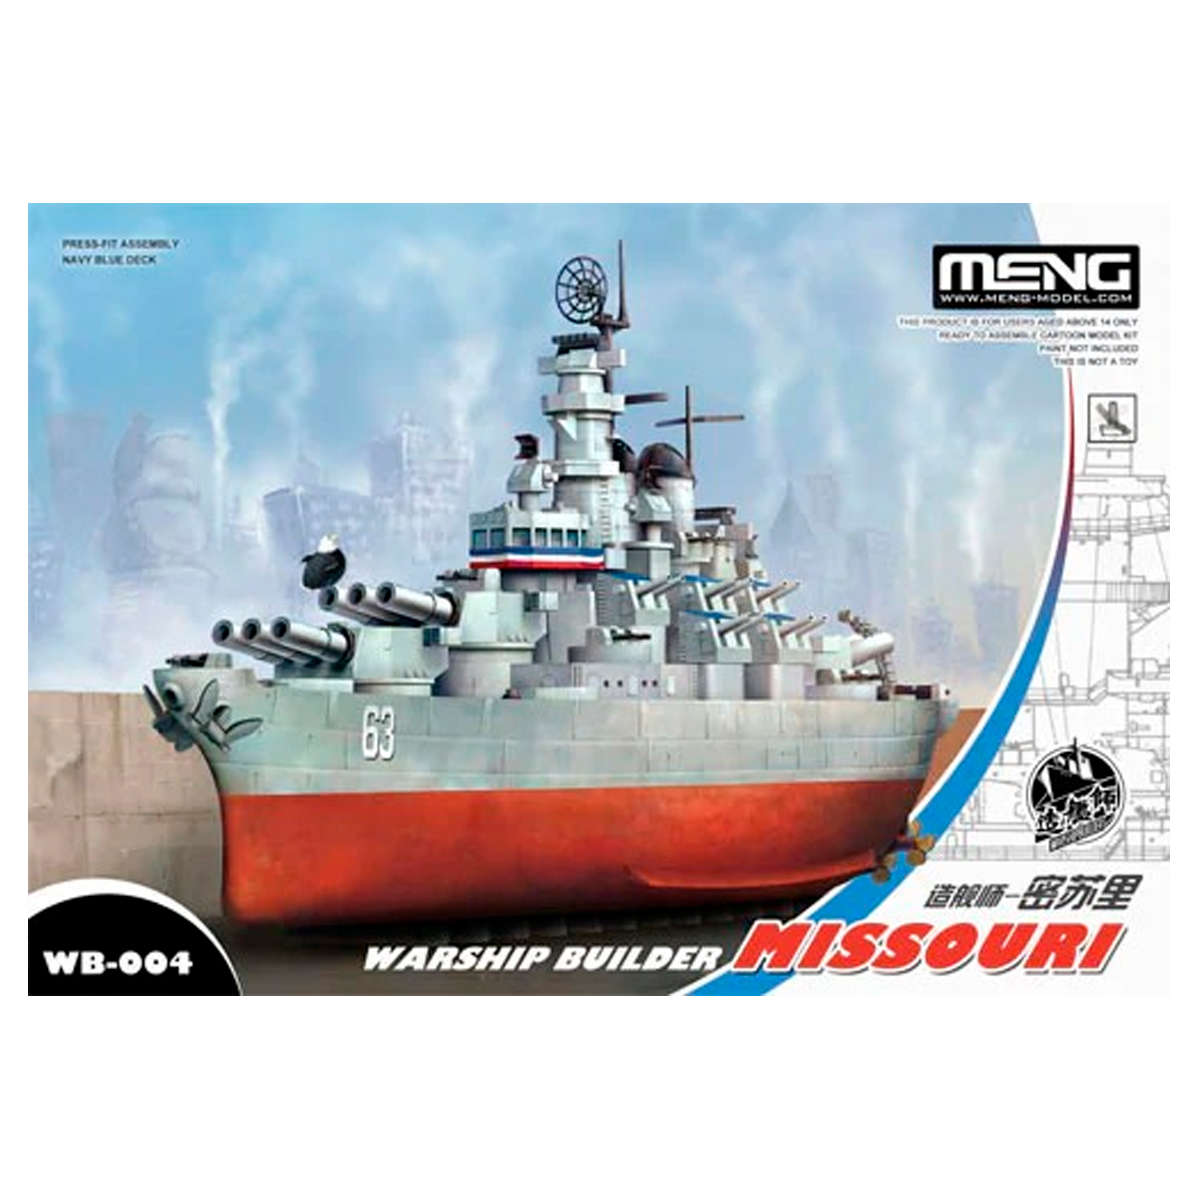 Warship Builder Missouri